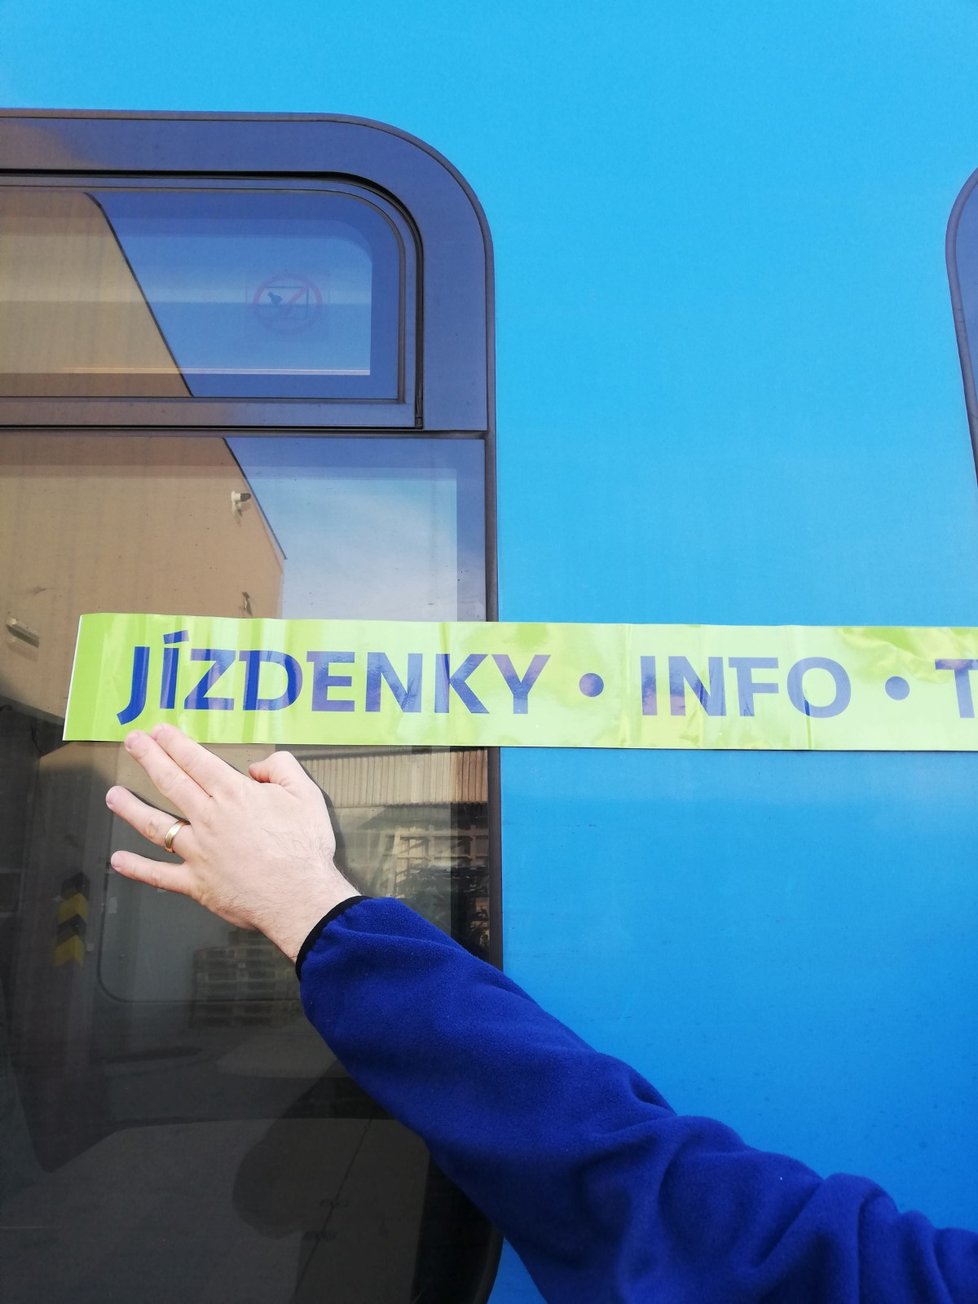 České dráhy polepí vagony, do kterých budou muset povinně nastupovat cestující bez jízdenky, zeleným pásem.